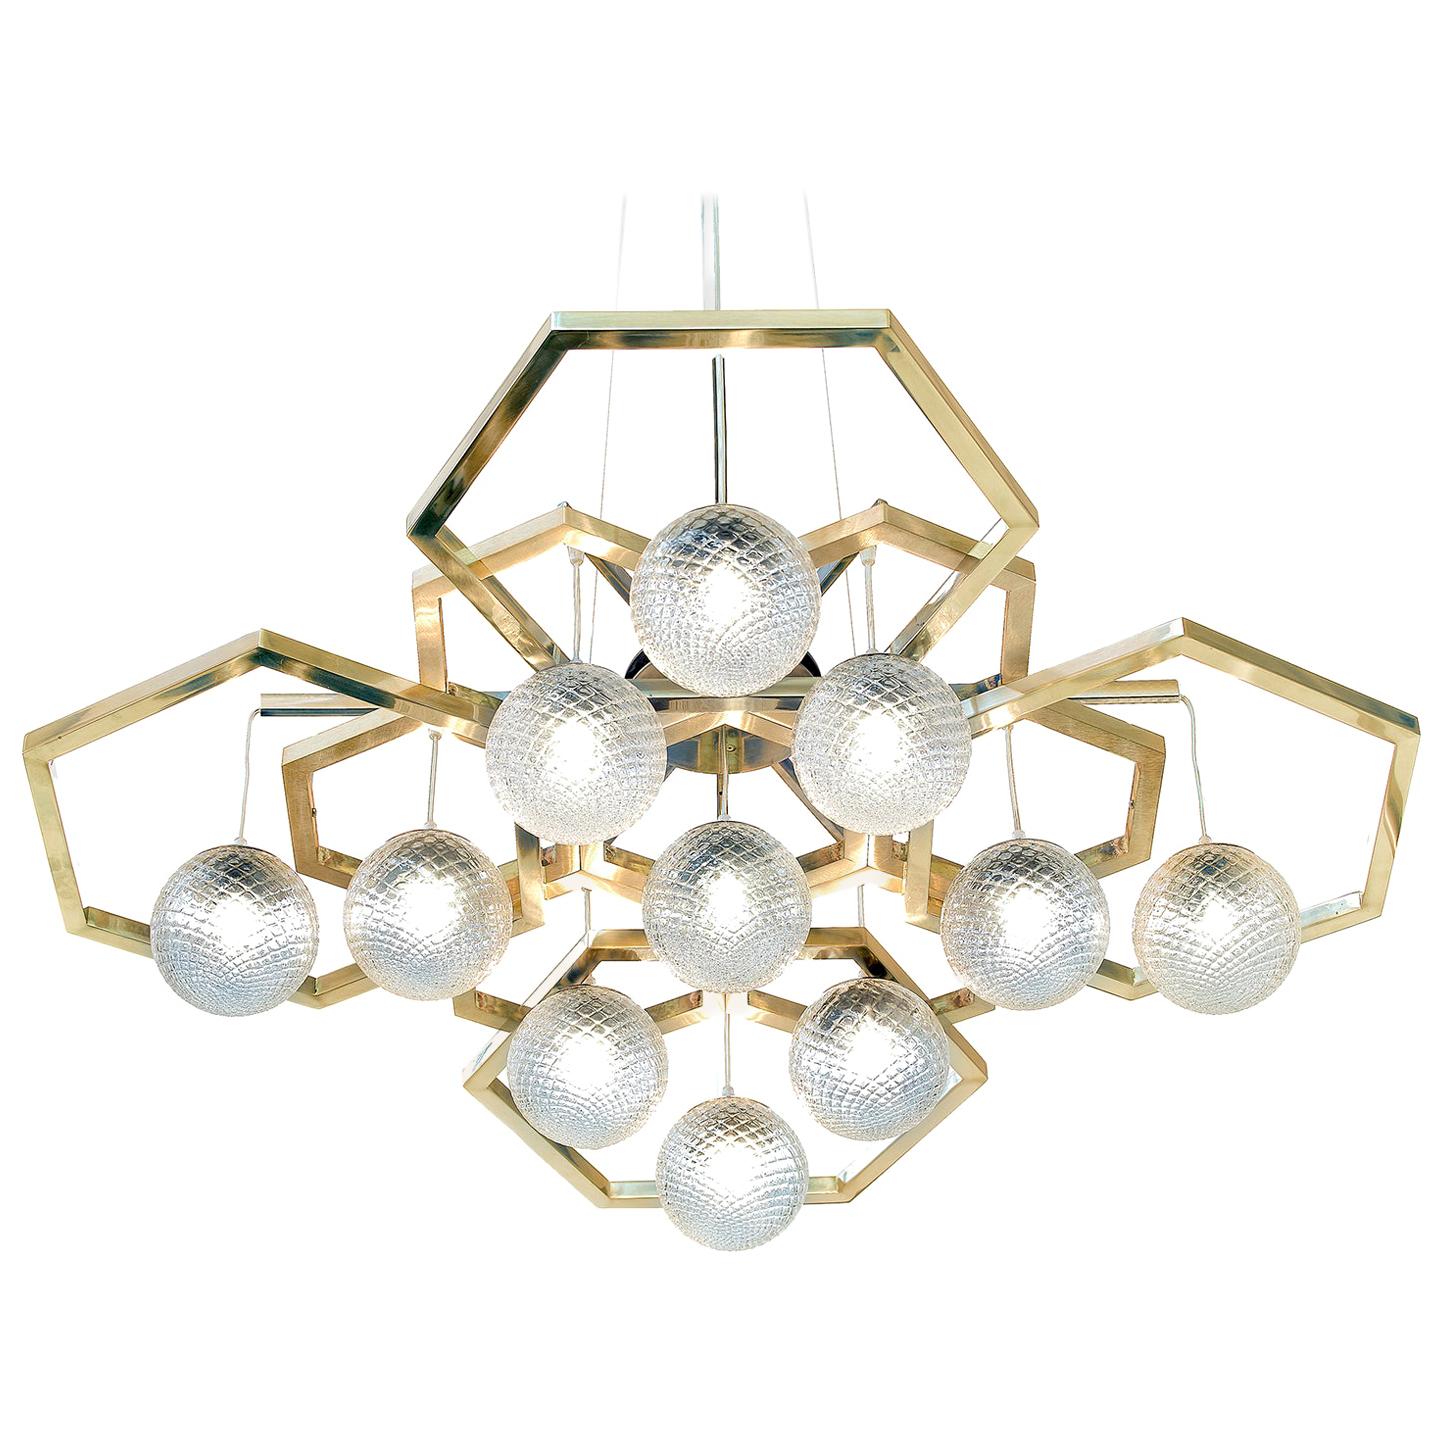 Hexagon Chandelier with Ballotton Spheres